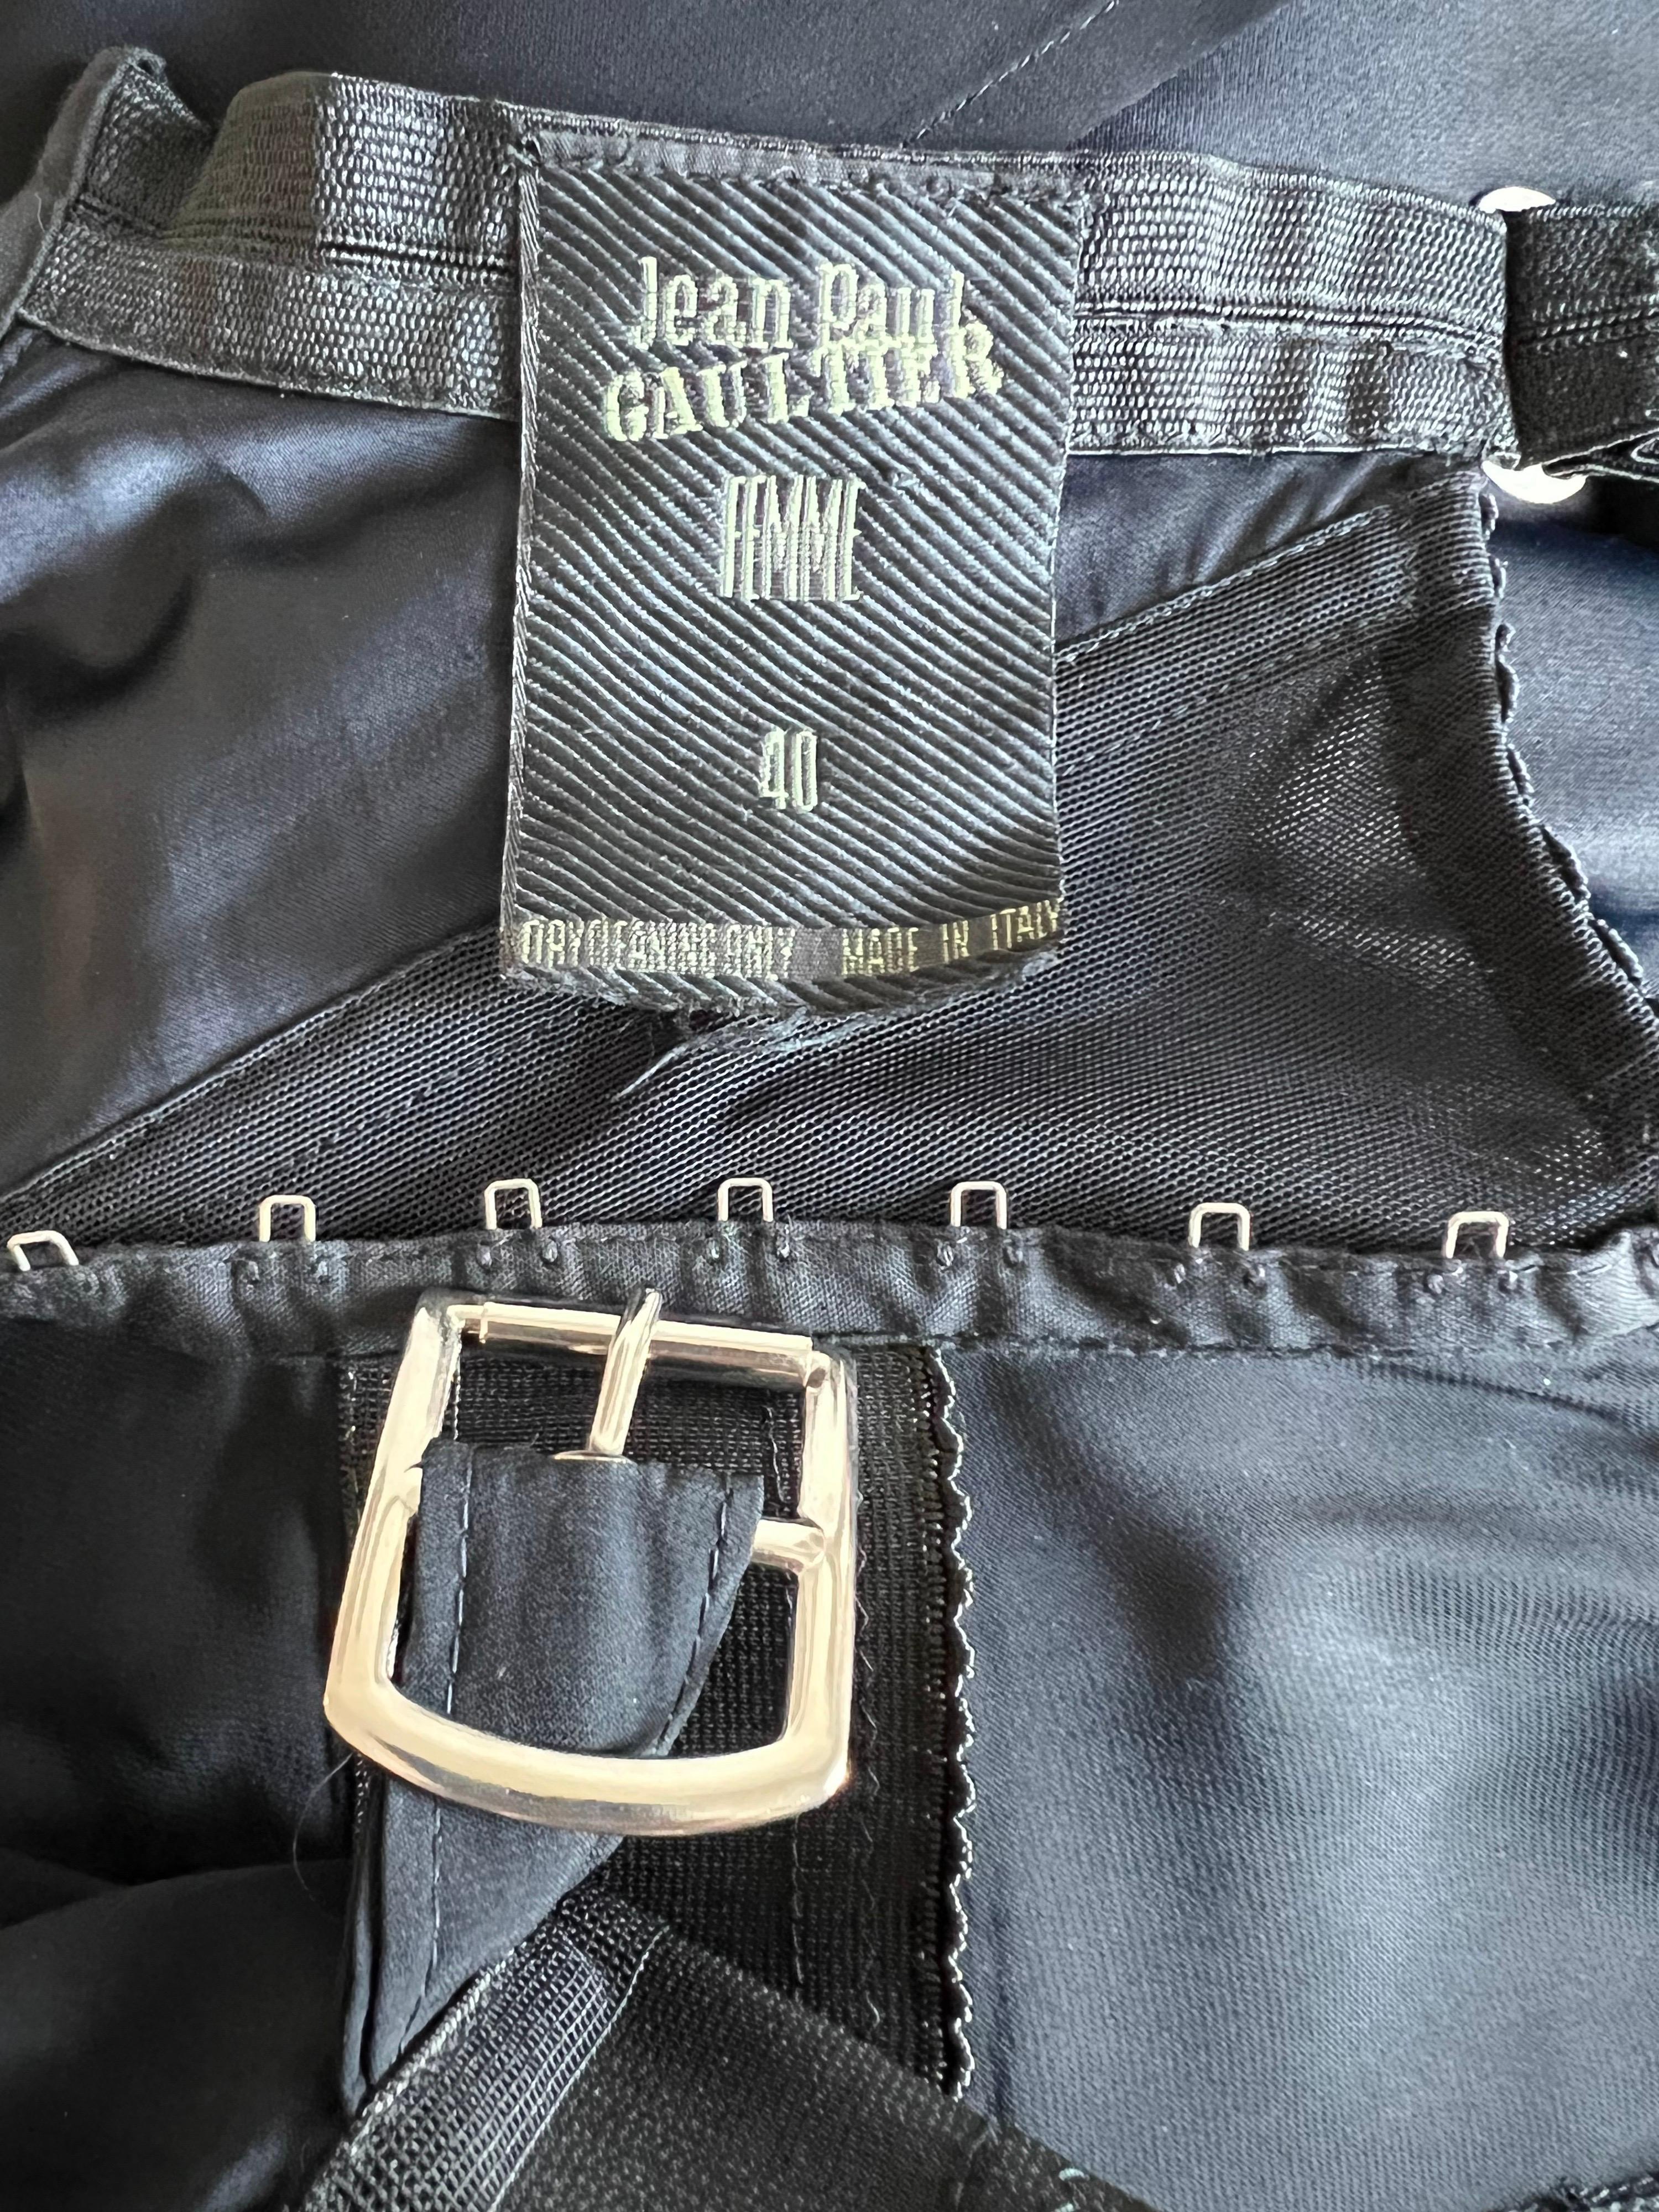 Jean Paul Gaultier S/S 1992 Runway Bra Corset Sheer Panels Black Evening Dress For Sale 9